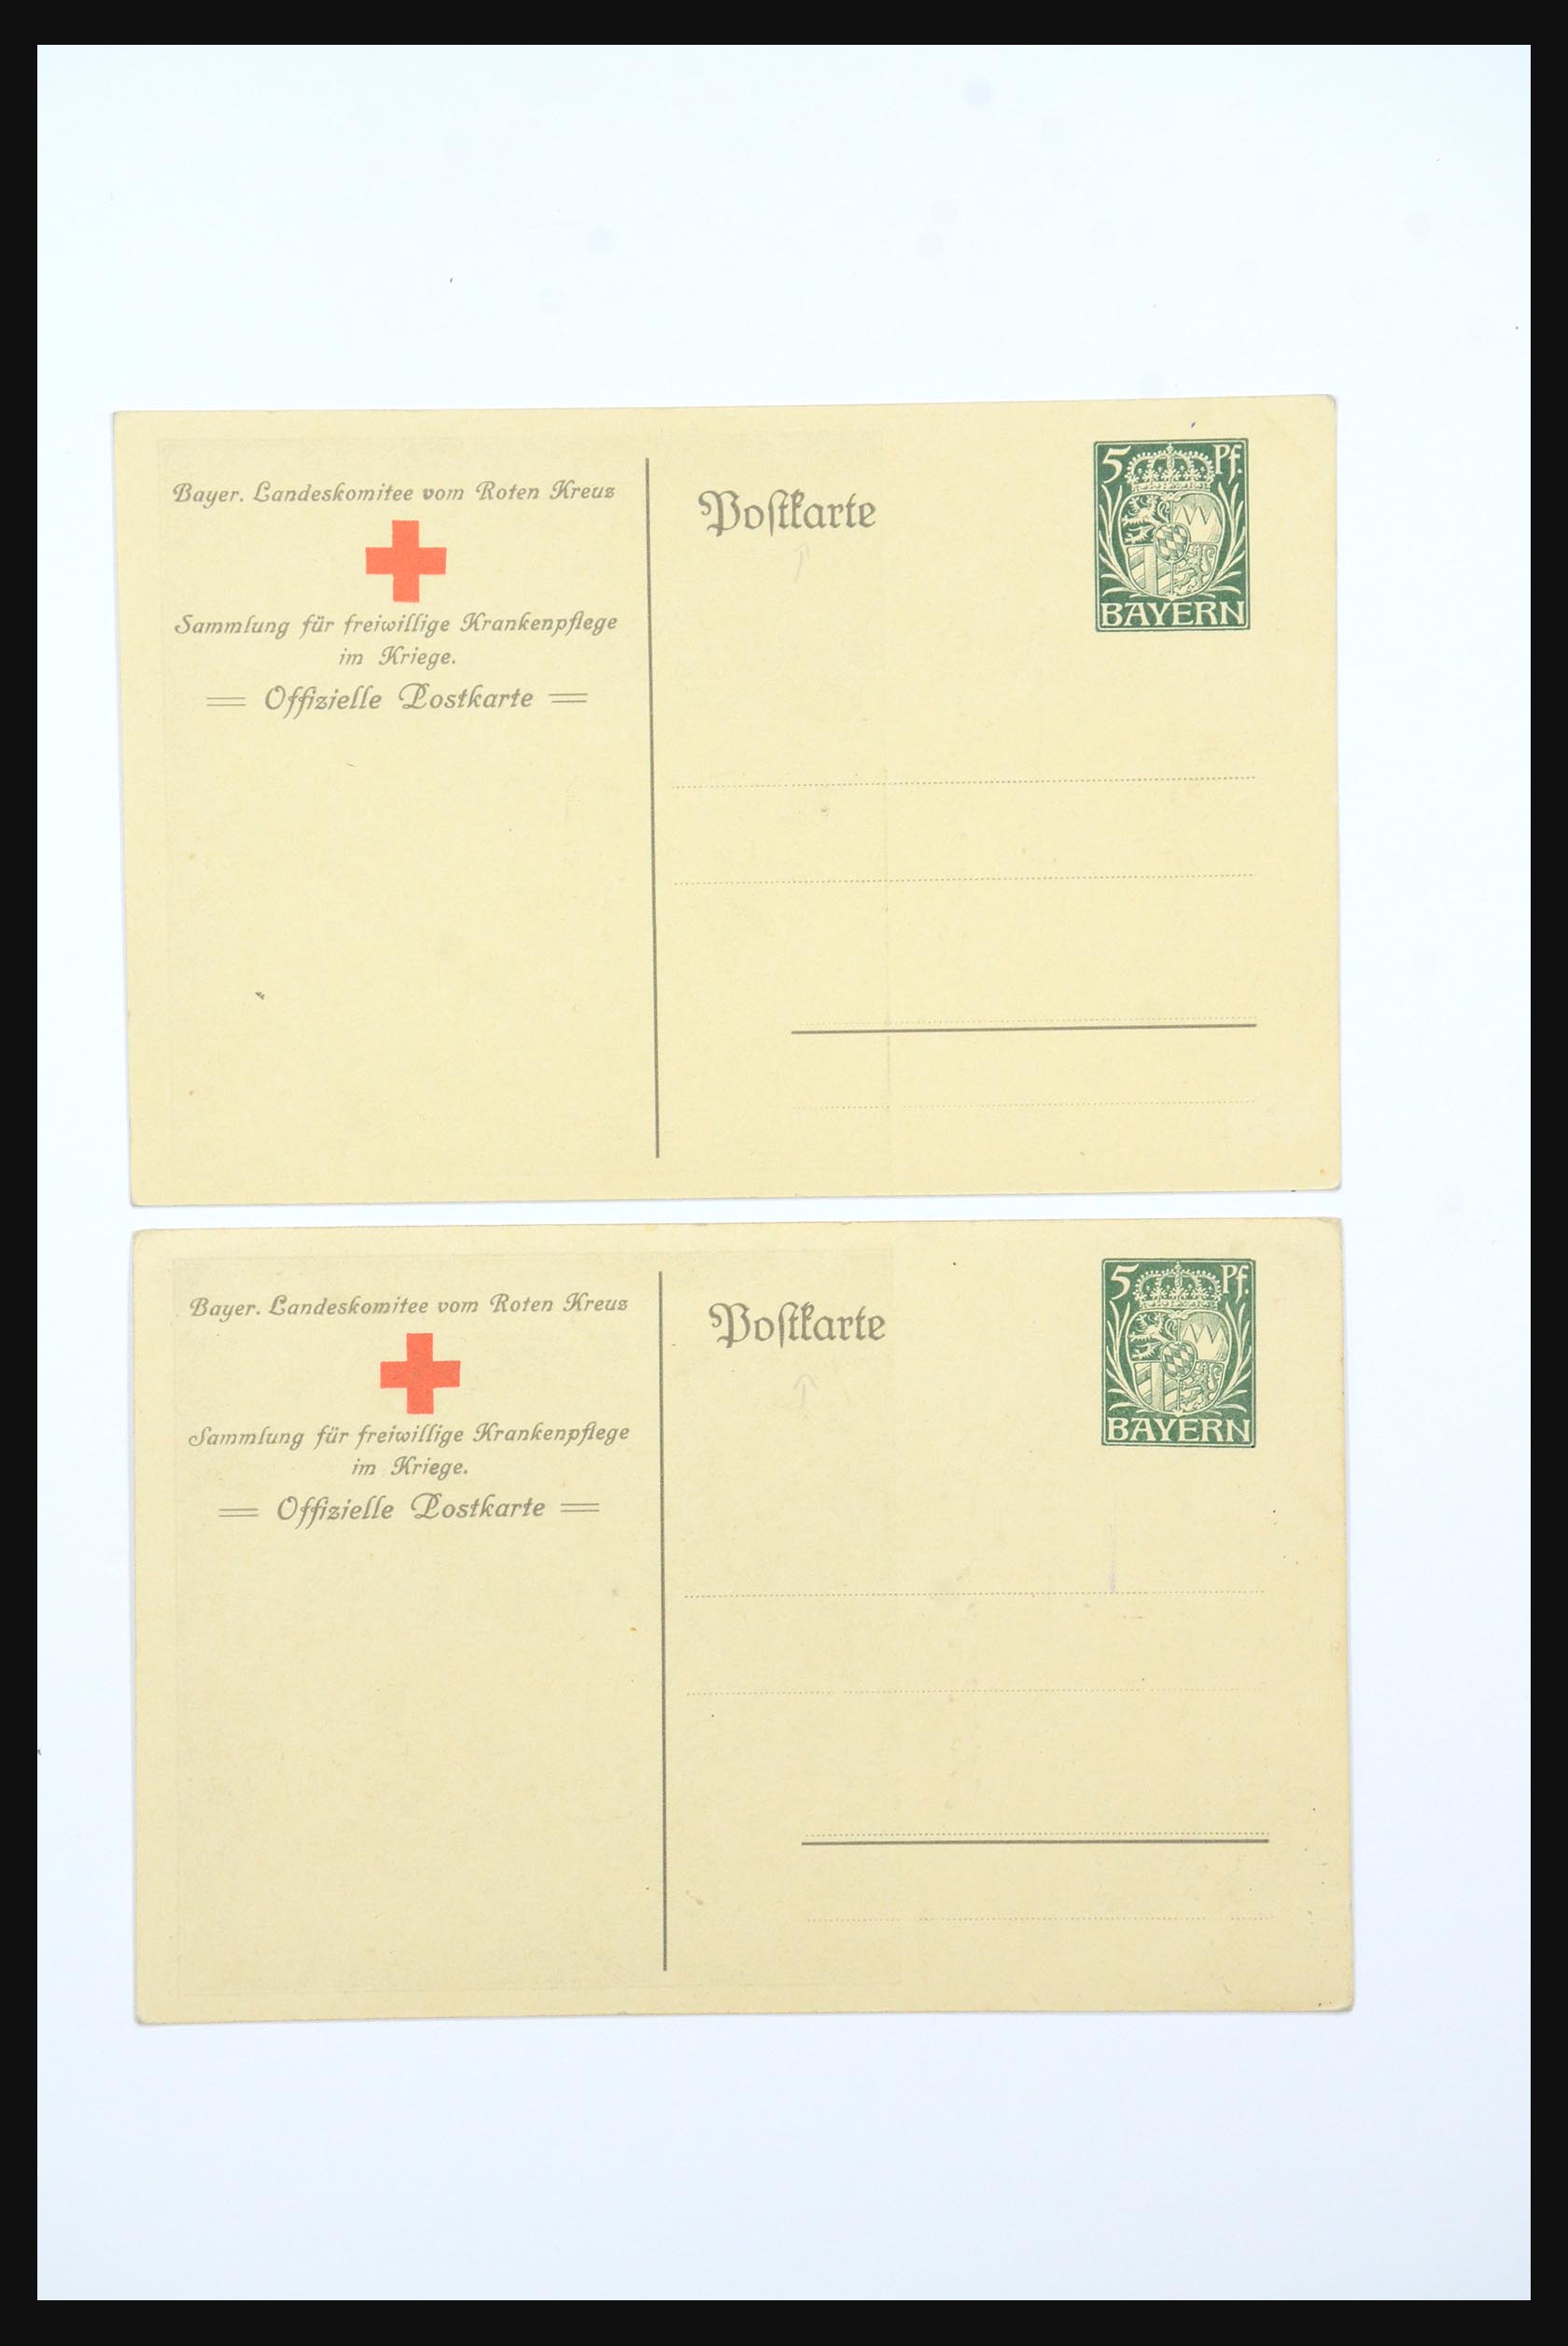 31365 0034 - 31365 Rode kruis brieven 1905-1975.